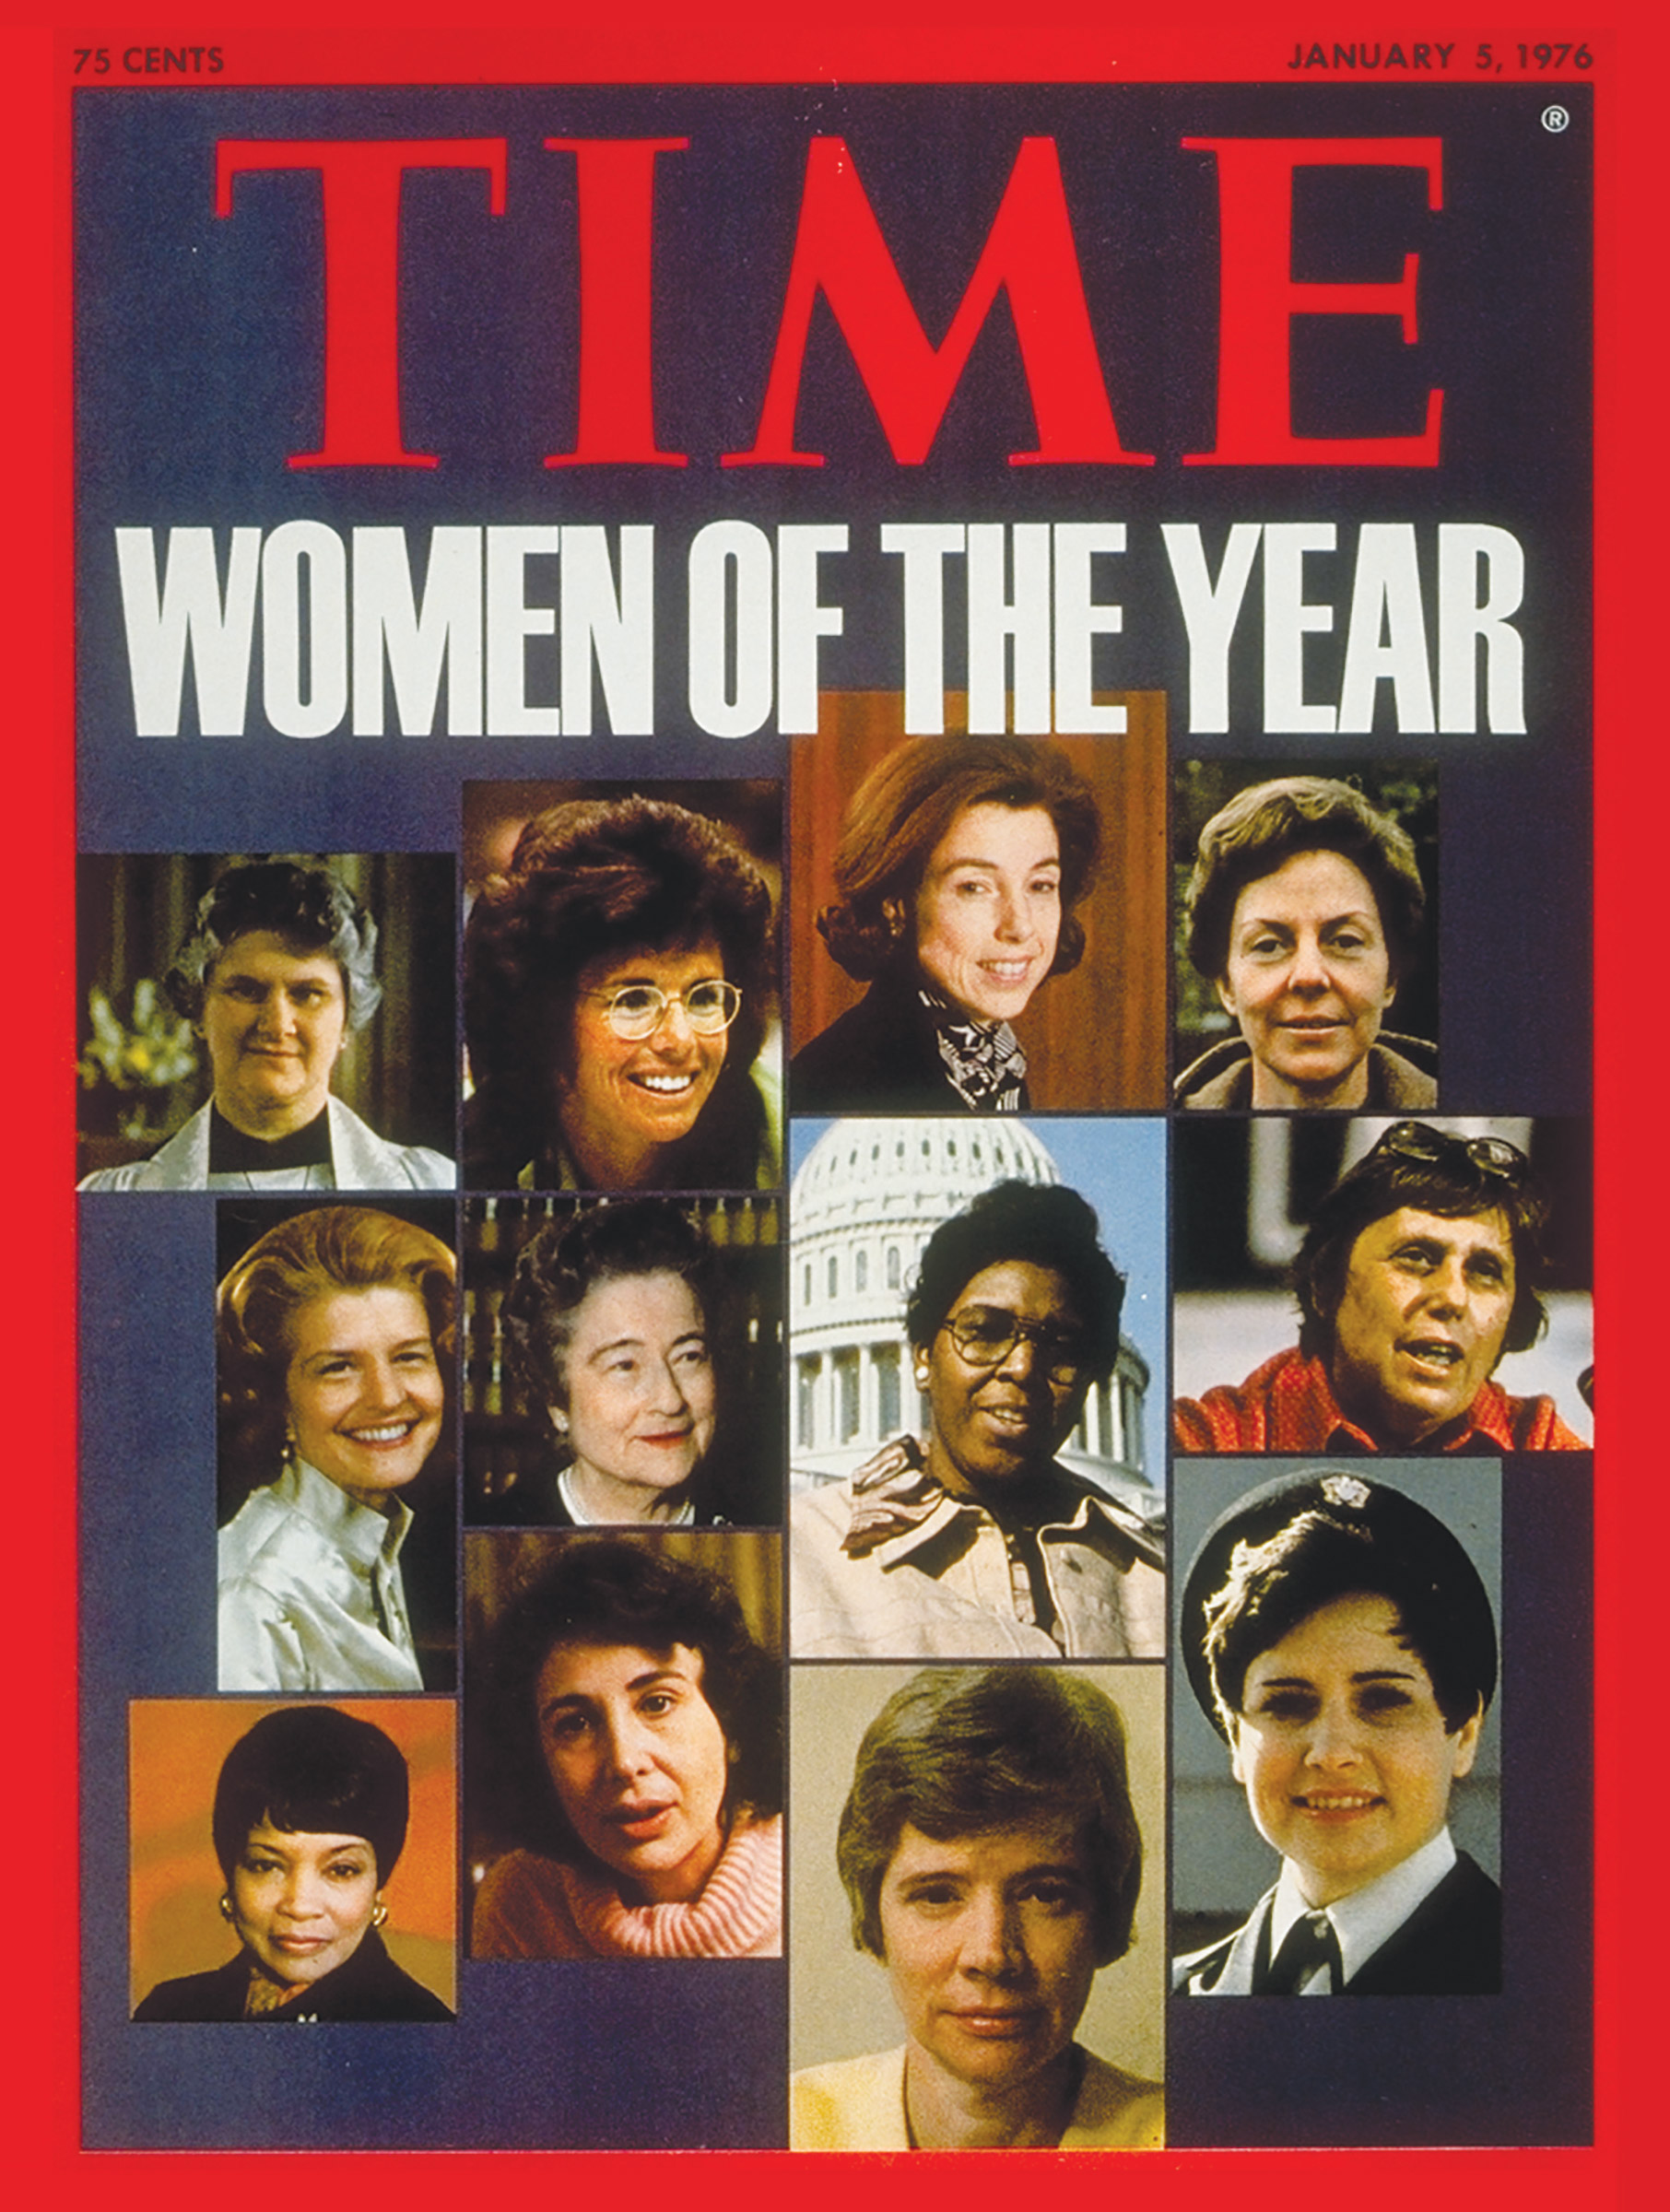 1975 American Women